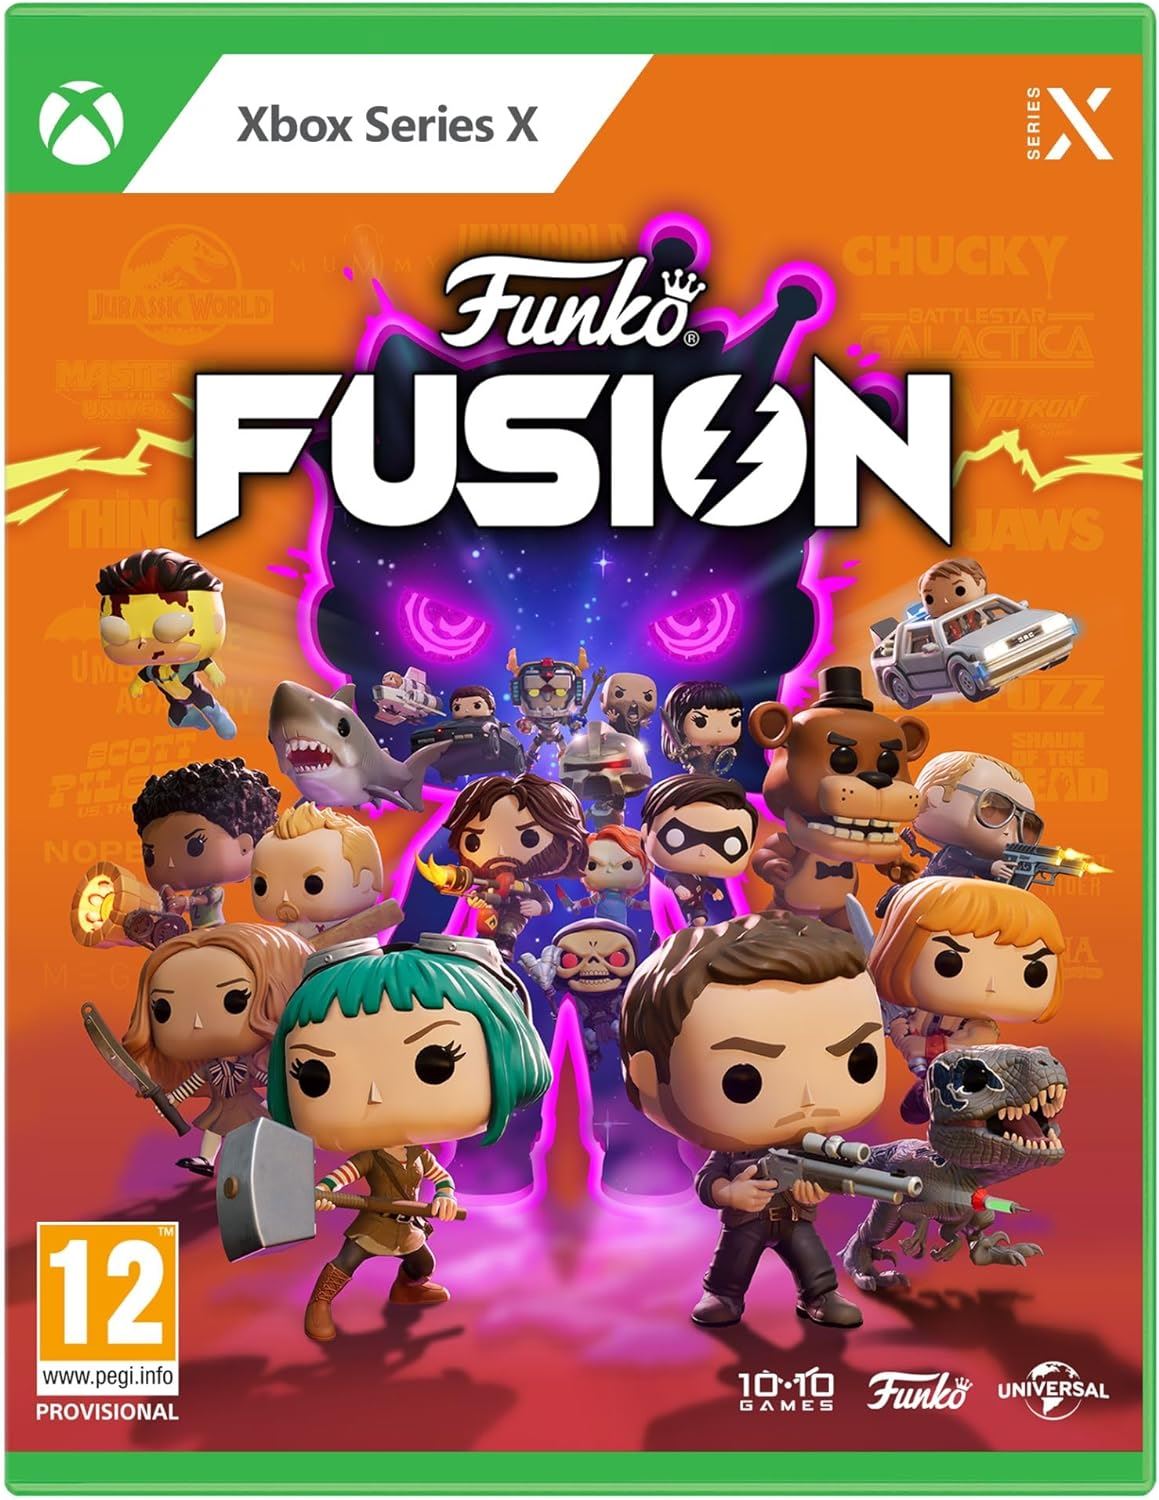 Funko Fusion Xbox Series X Game